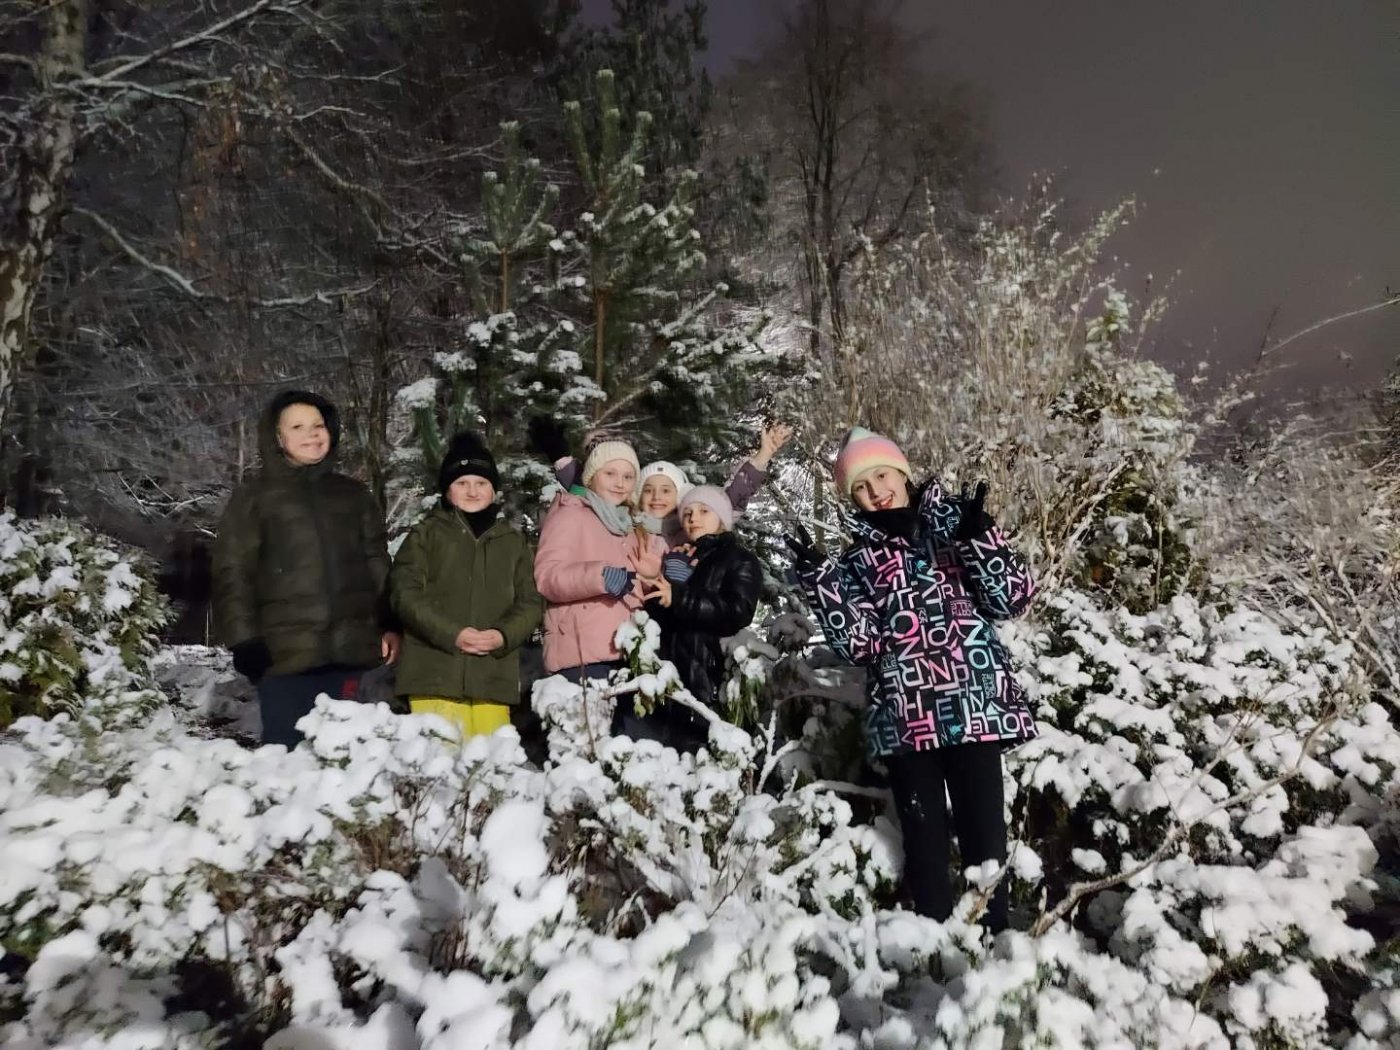 Grupa dzieci w śnieżnej scenerii